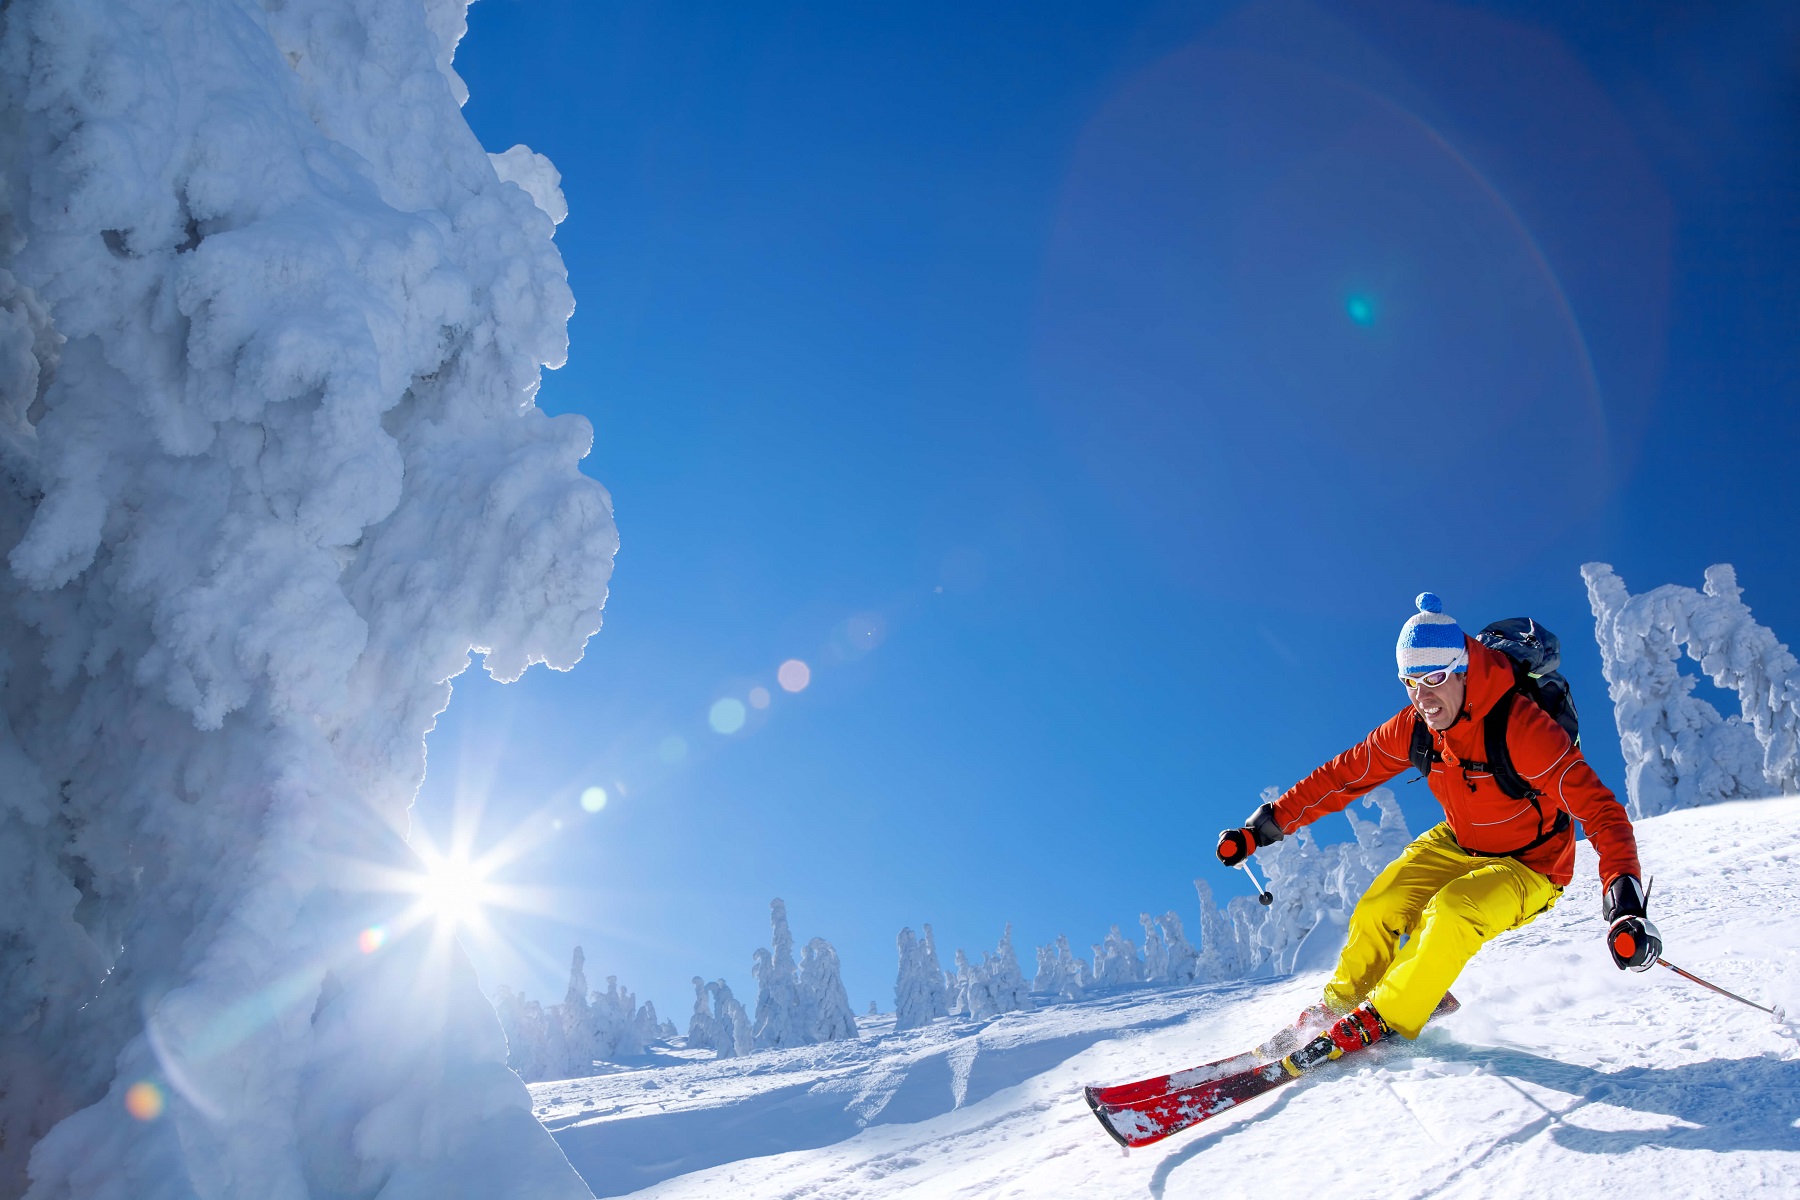 Kurtka narciarska – zobacz jak nosić ją na co dzień